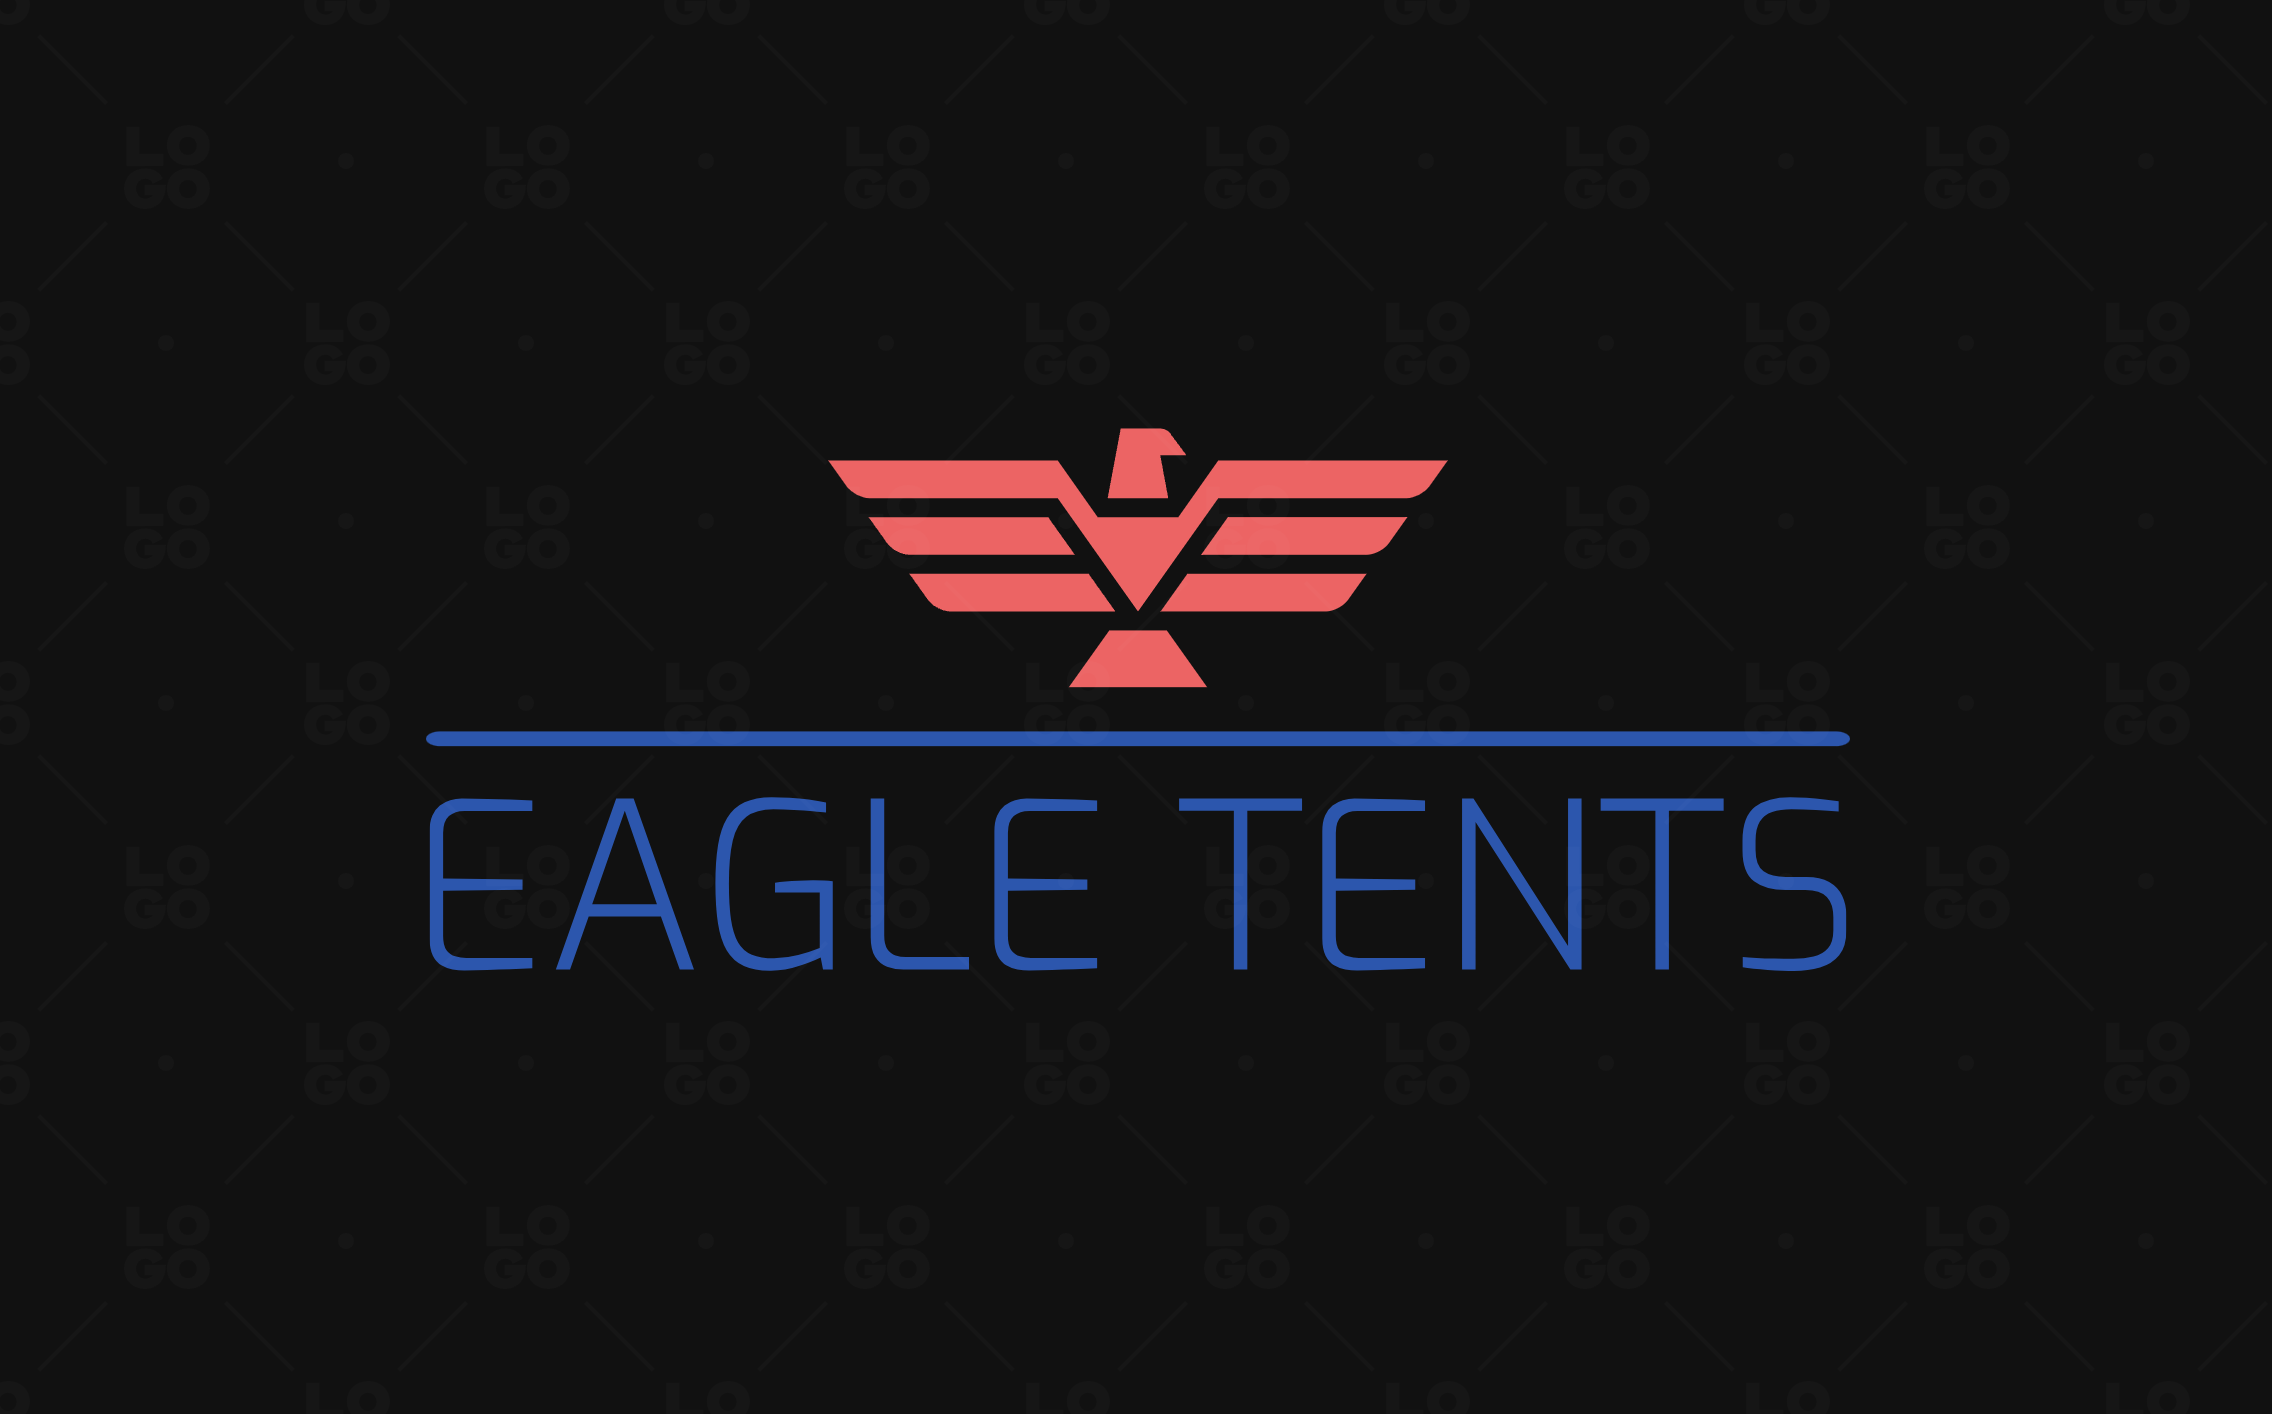 EagleTents.com